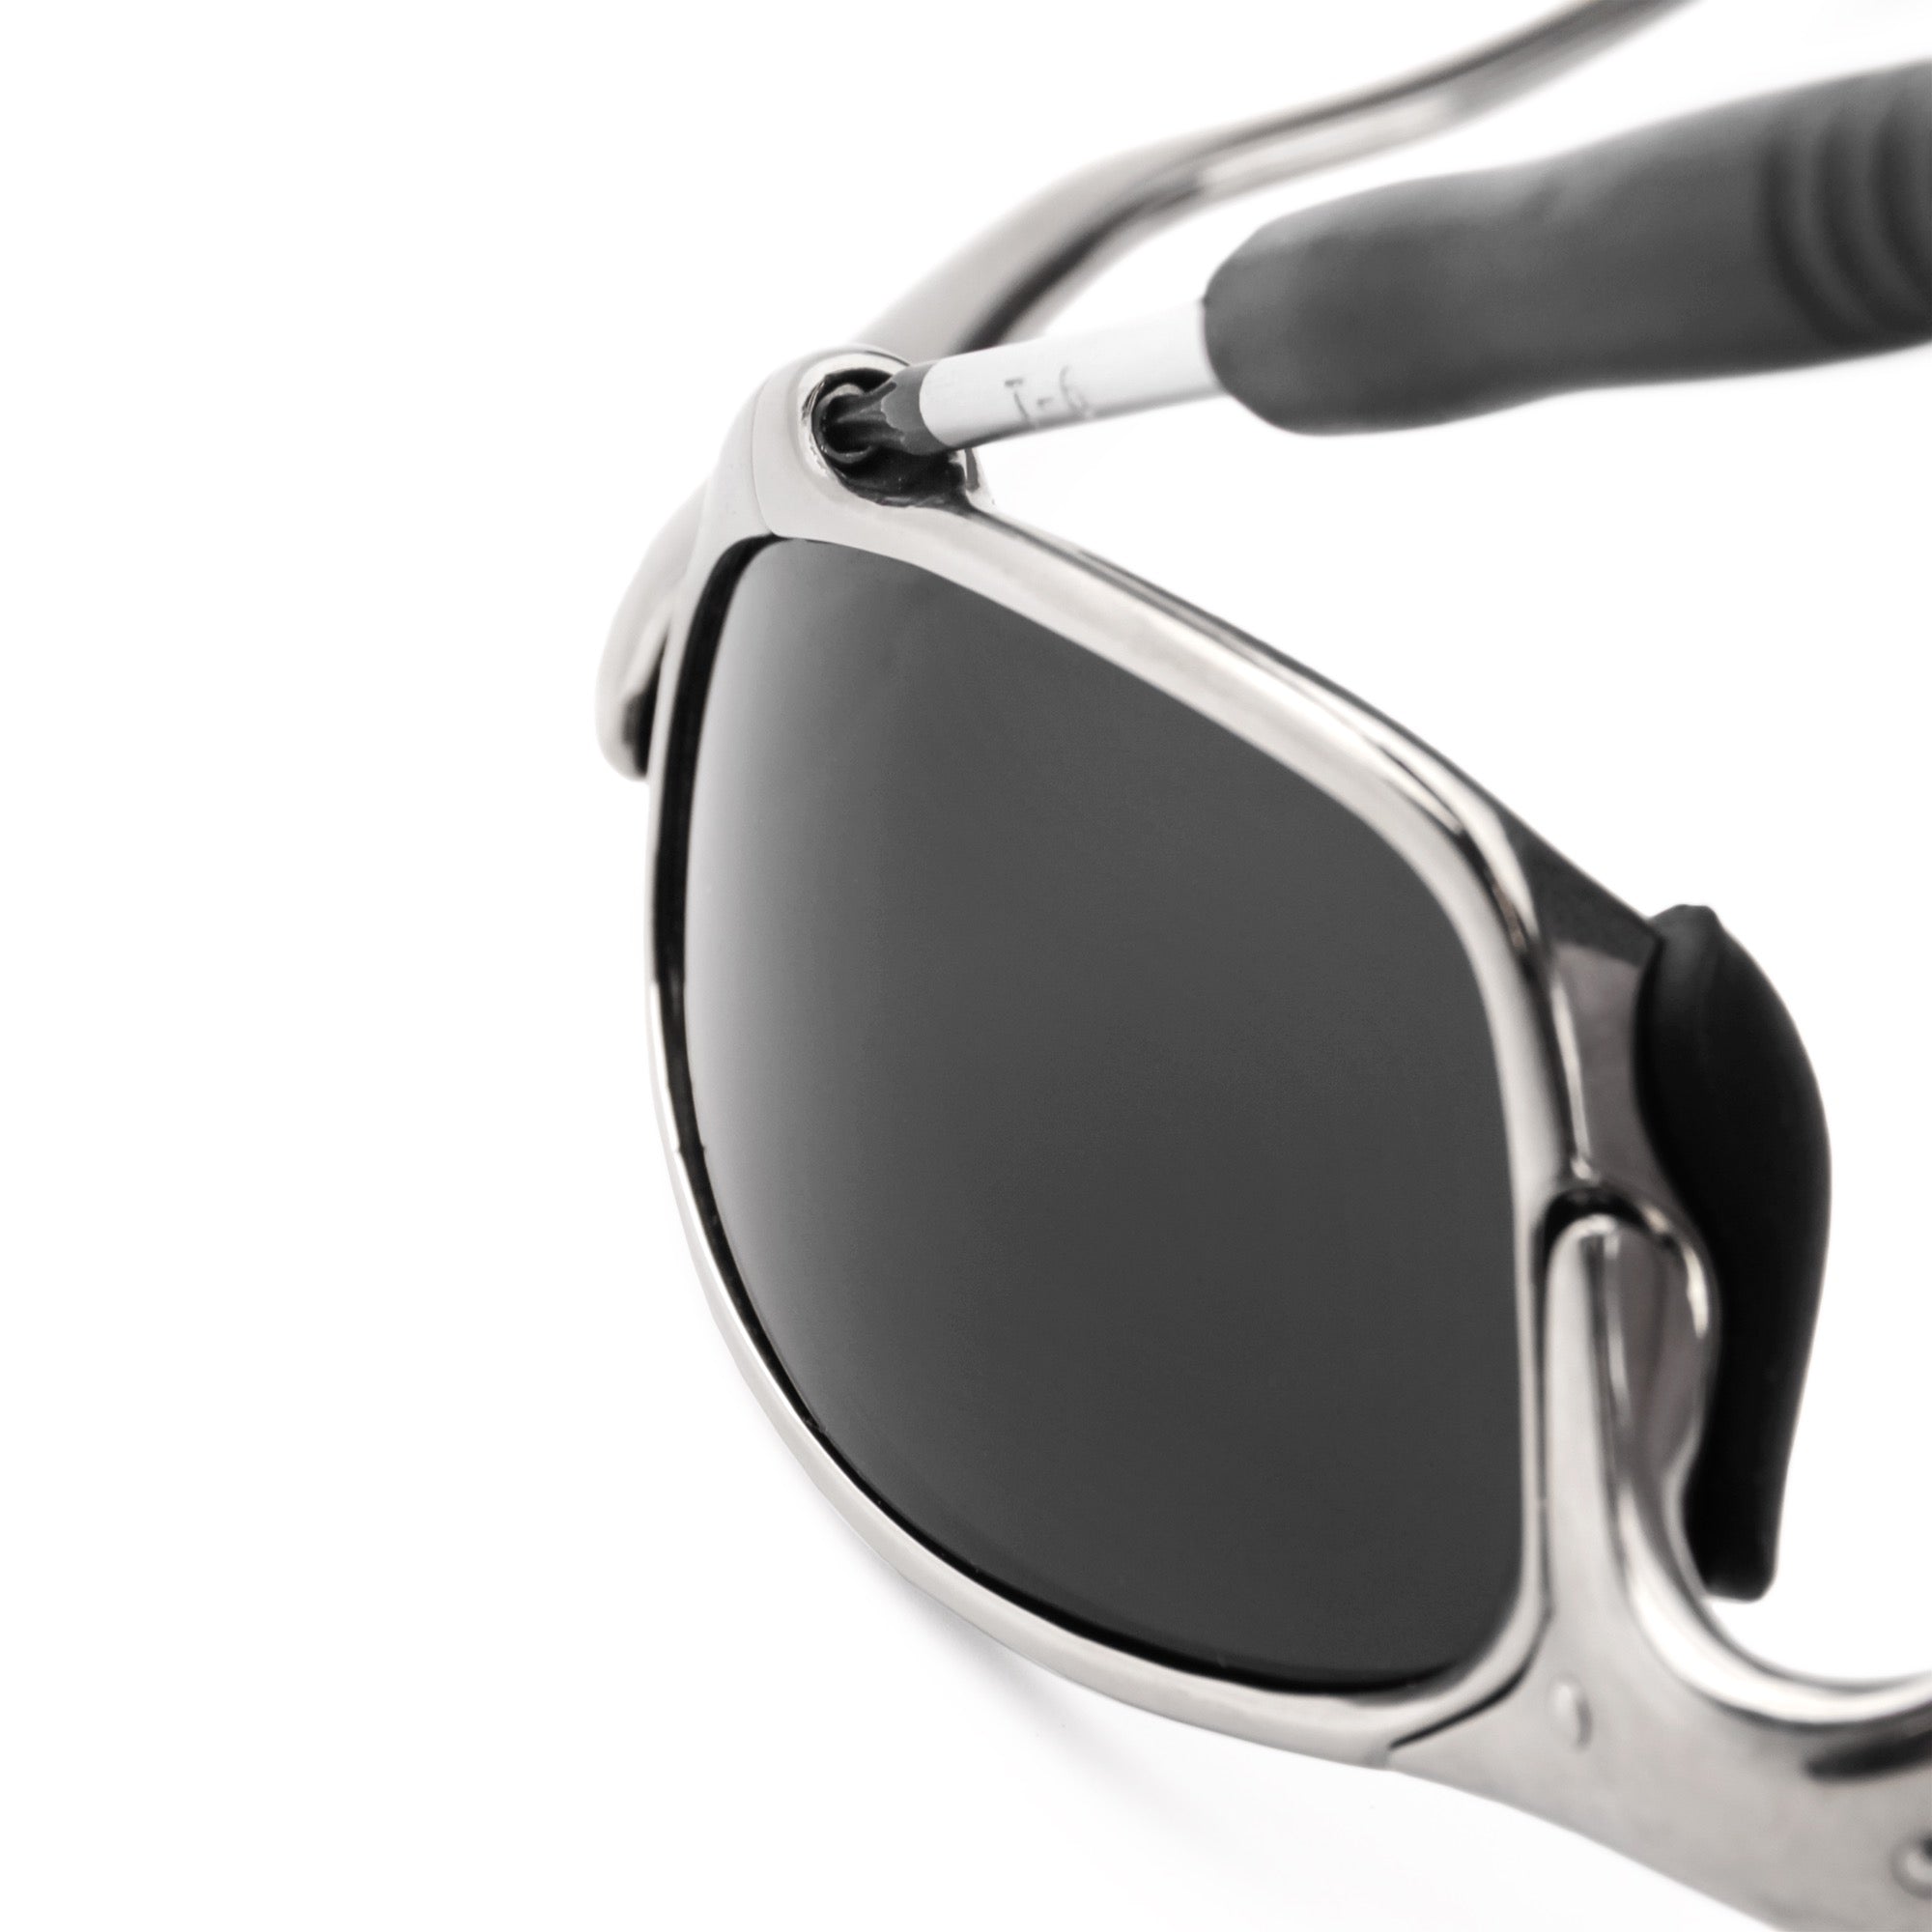 Installing Revant T6 screws in Oakley Juliet sunglasses